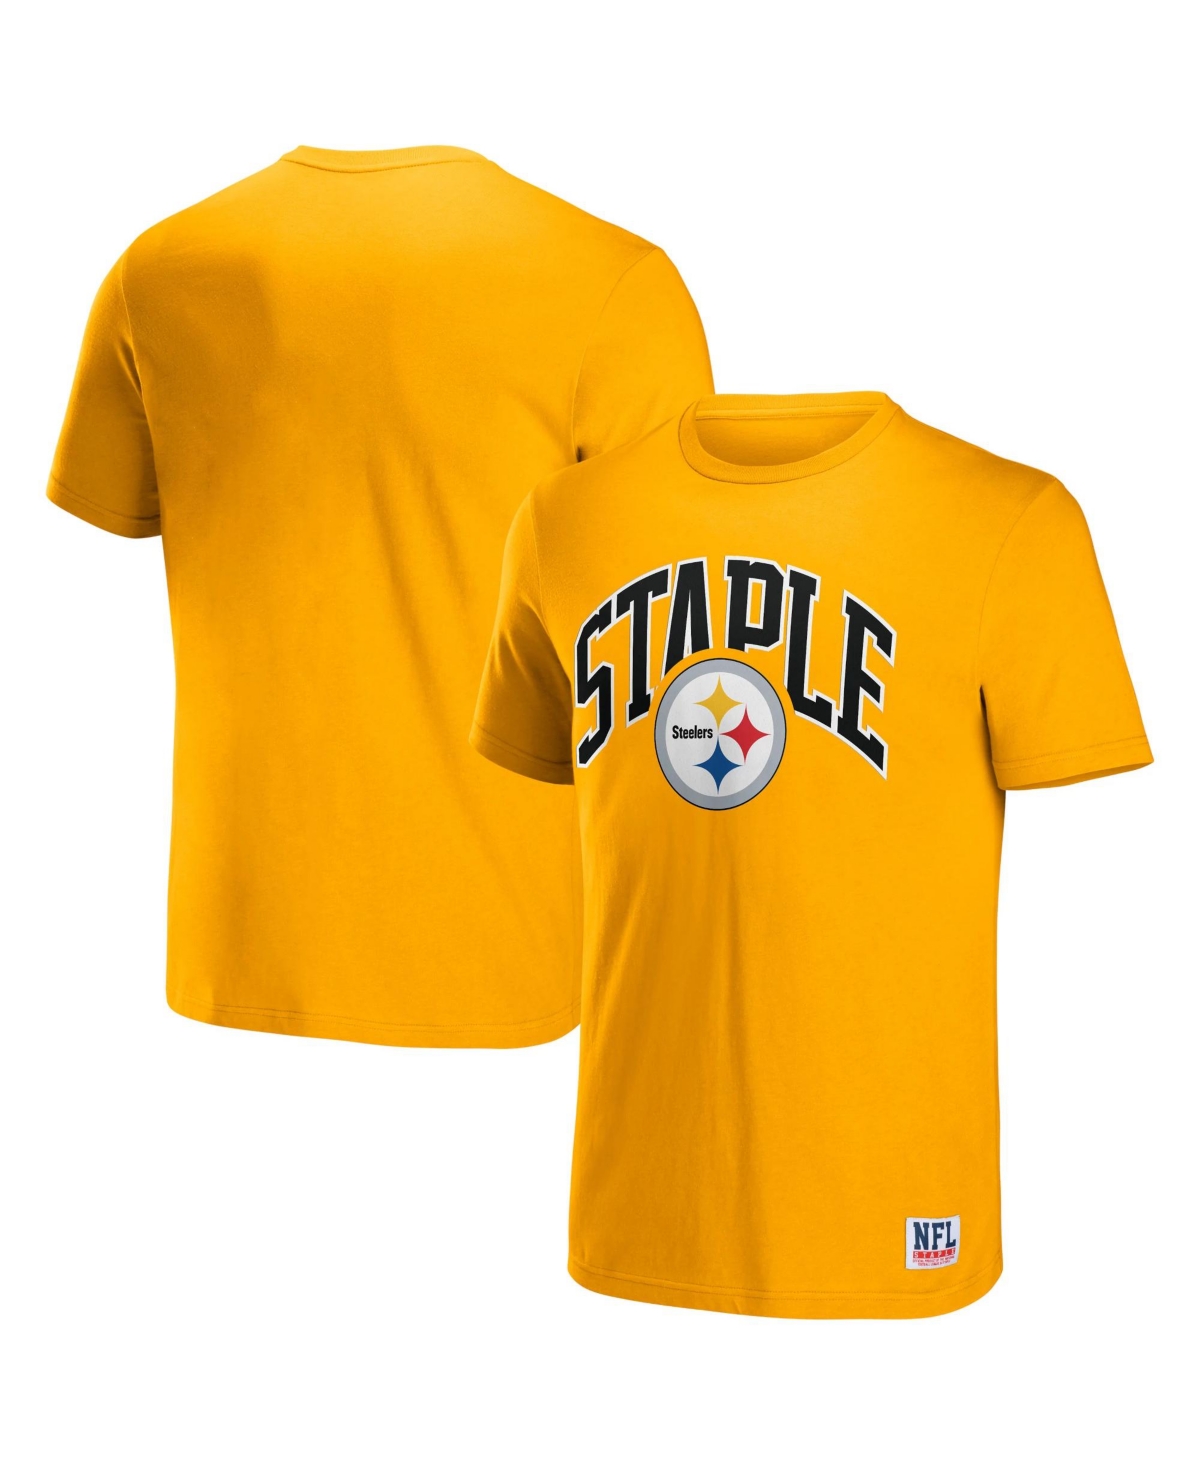 Men's Nfl X Staple Yellow Pittsburgh Steelers Lockup Logo Short Sleeve T-shirt - Yellow